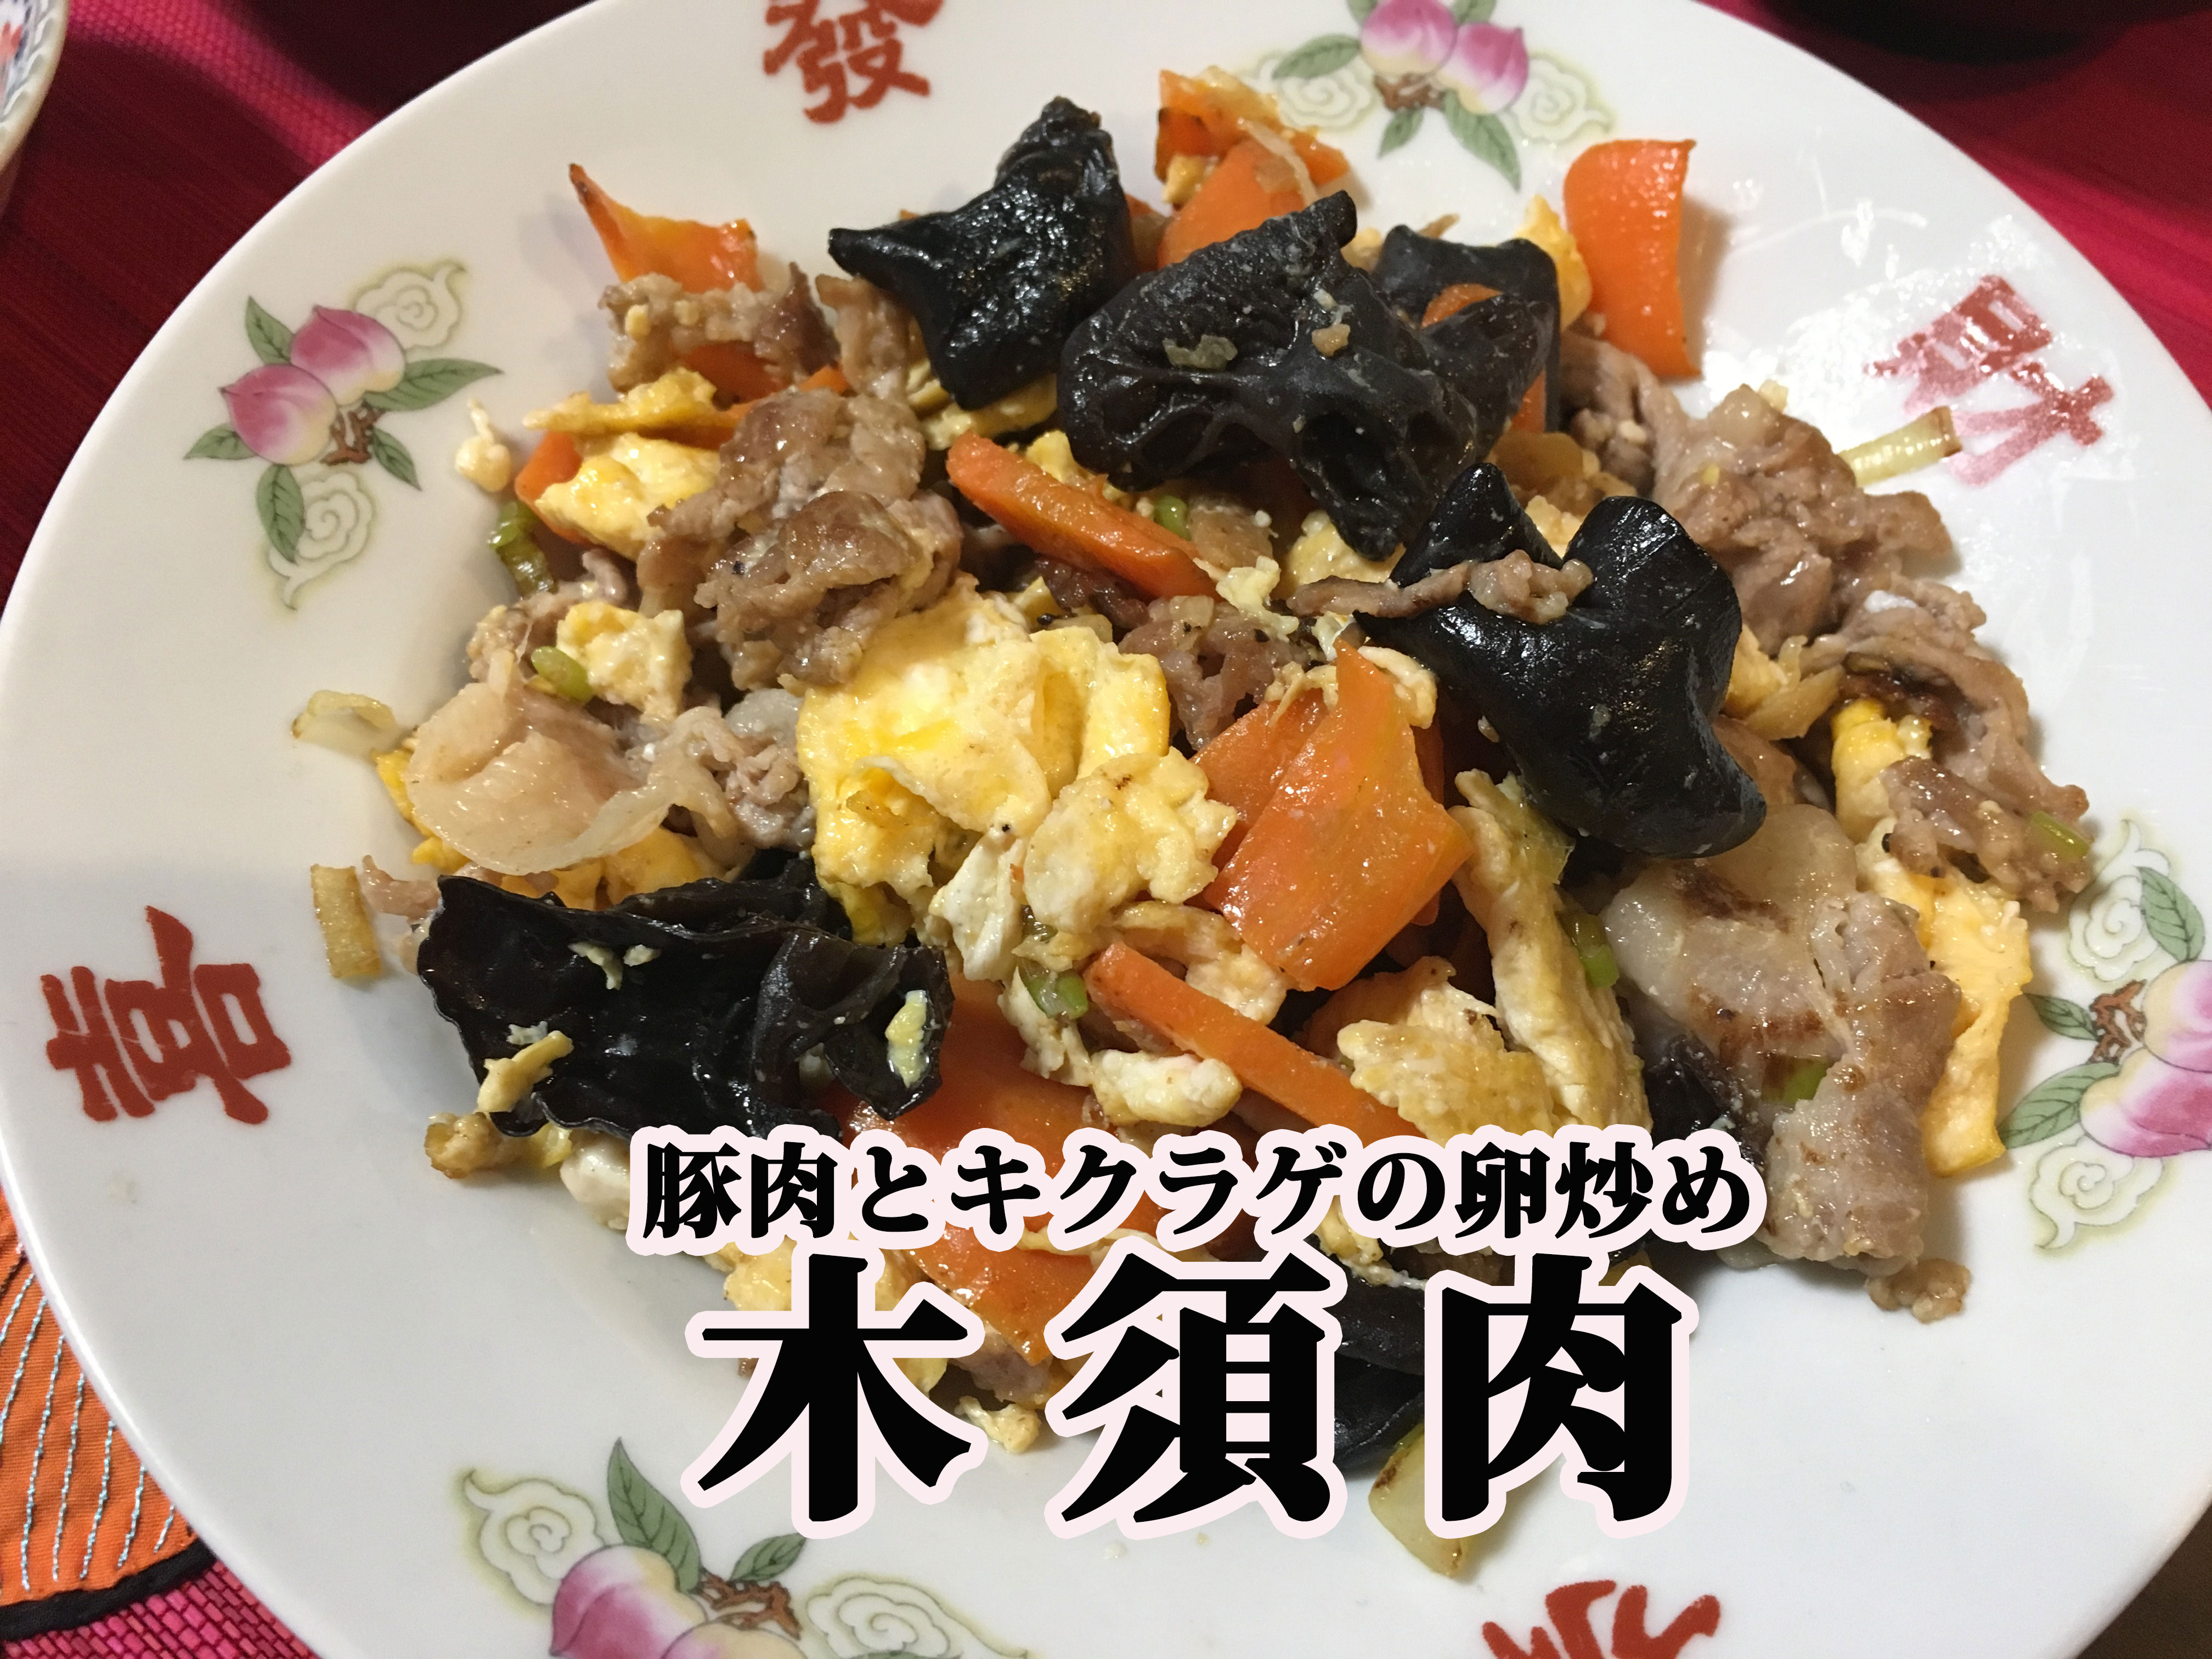 レシピあり キミは中国料理 木須肉 むーしゅーろう をご存知か 丼にするとウマイ豚卵料理 でも 木須 って何のこと その由来が感動的に美しい ロケットニュース24